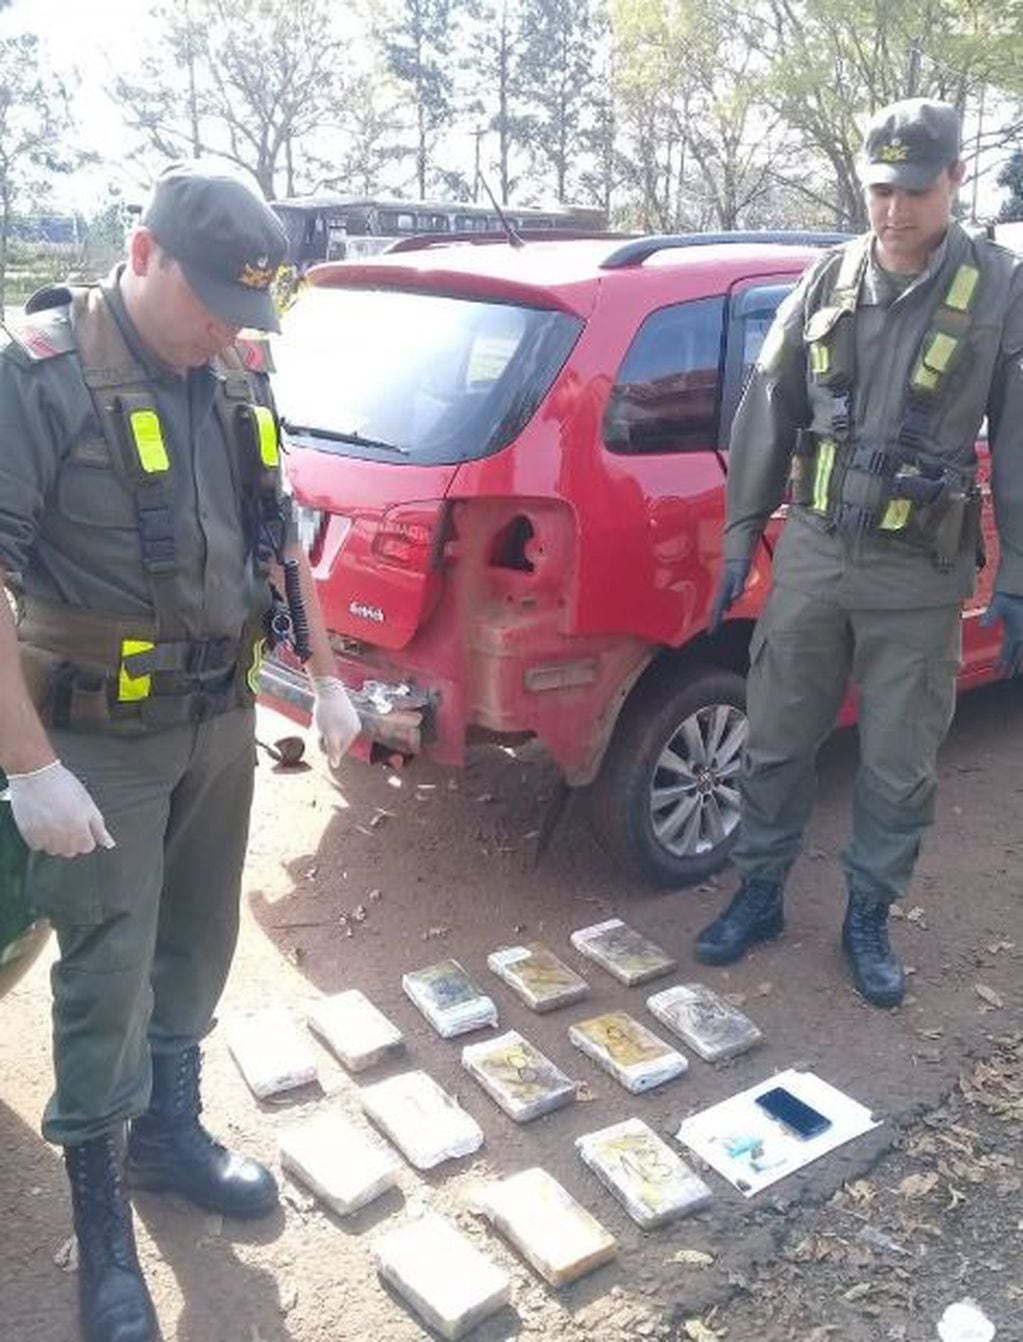 Encontraron 14 kilos de cocaína ocultos en una camioneta. (Foto: Gendarmería)